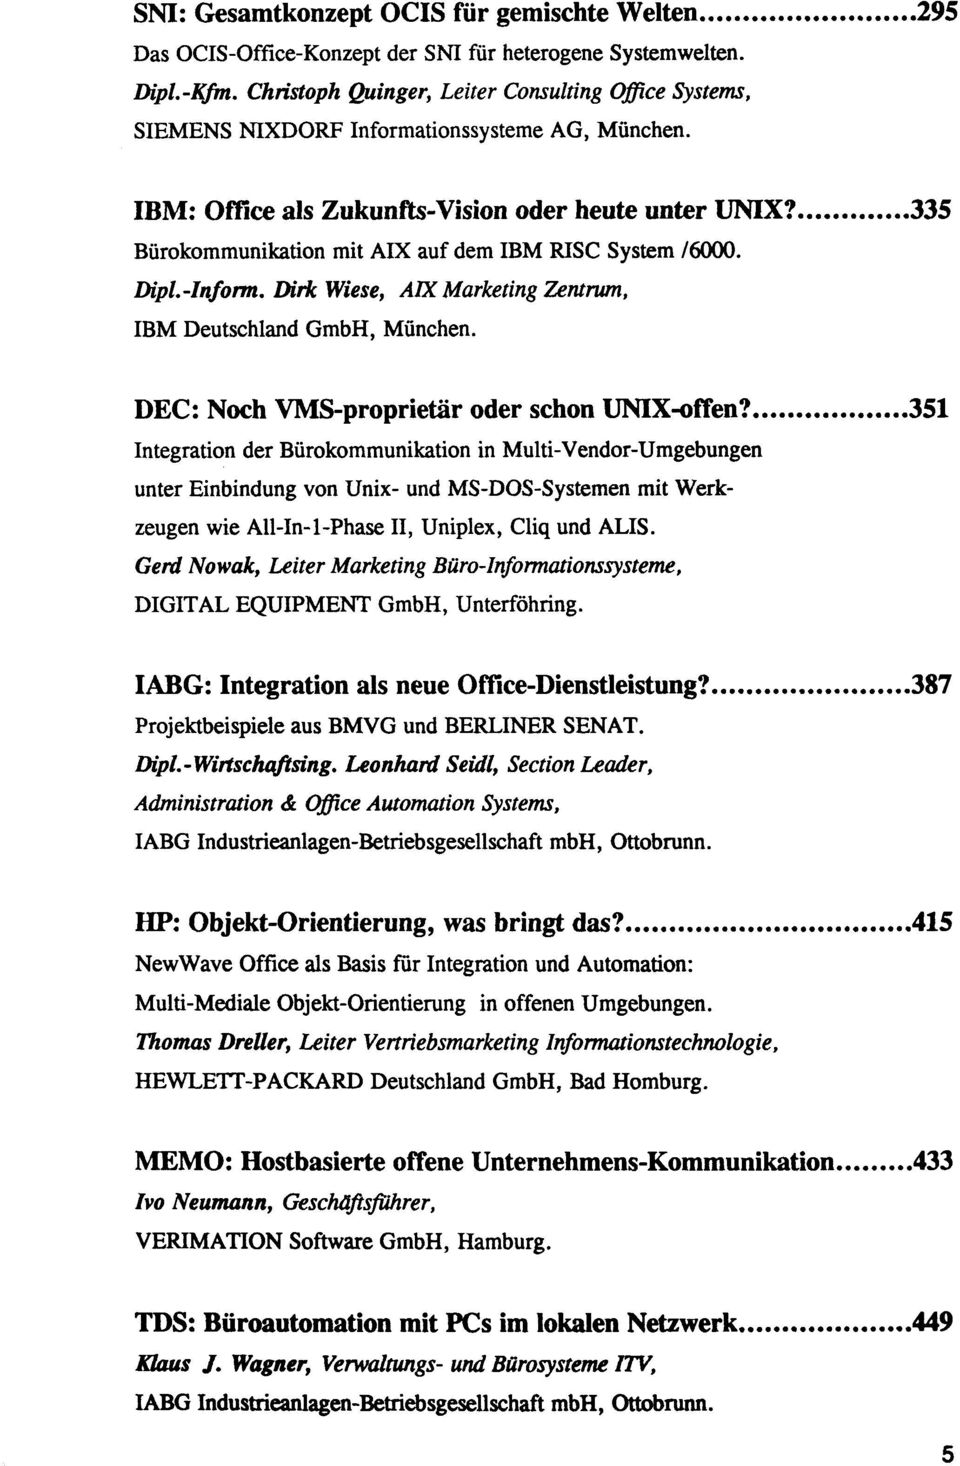 335 Burokommunikation mit AIX auf dem IBM RISC System /6000. Dipl.-Inform. Dirk Wiese, AIX Marketing Tantrum, IBM Deutschland GmbH, Munchen. DEC: Noch VMS-proprietar oder schon UNIX-offen?